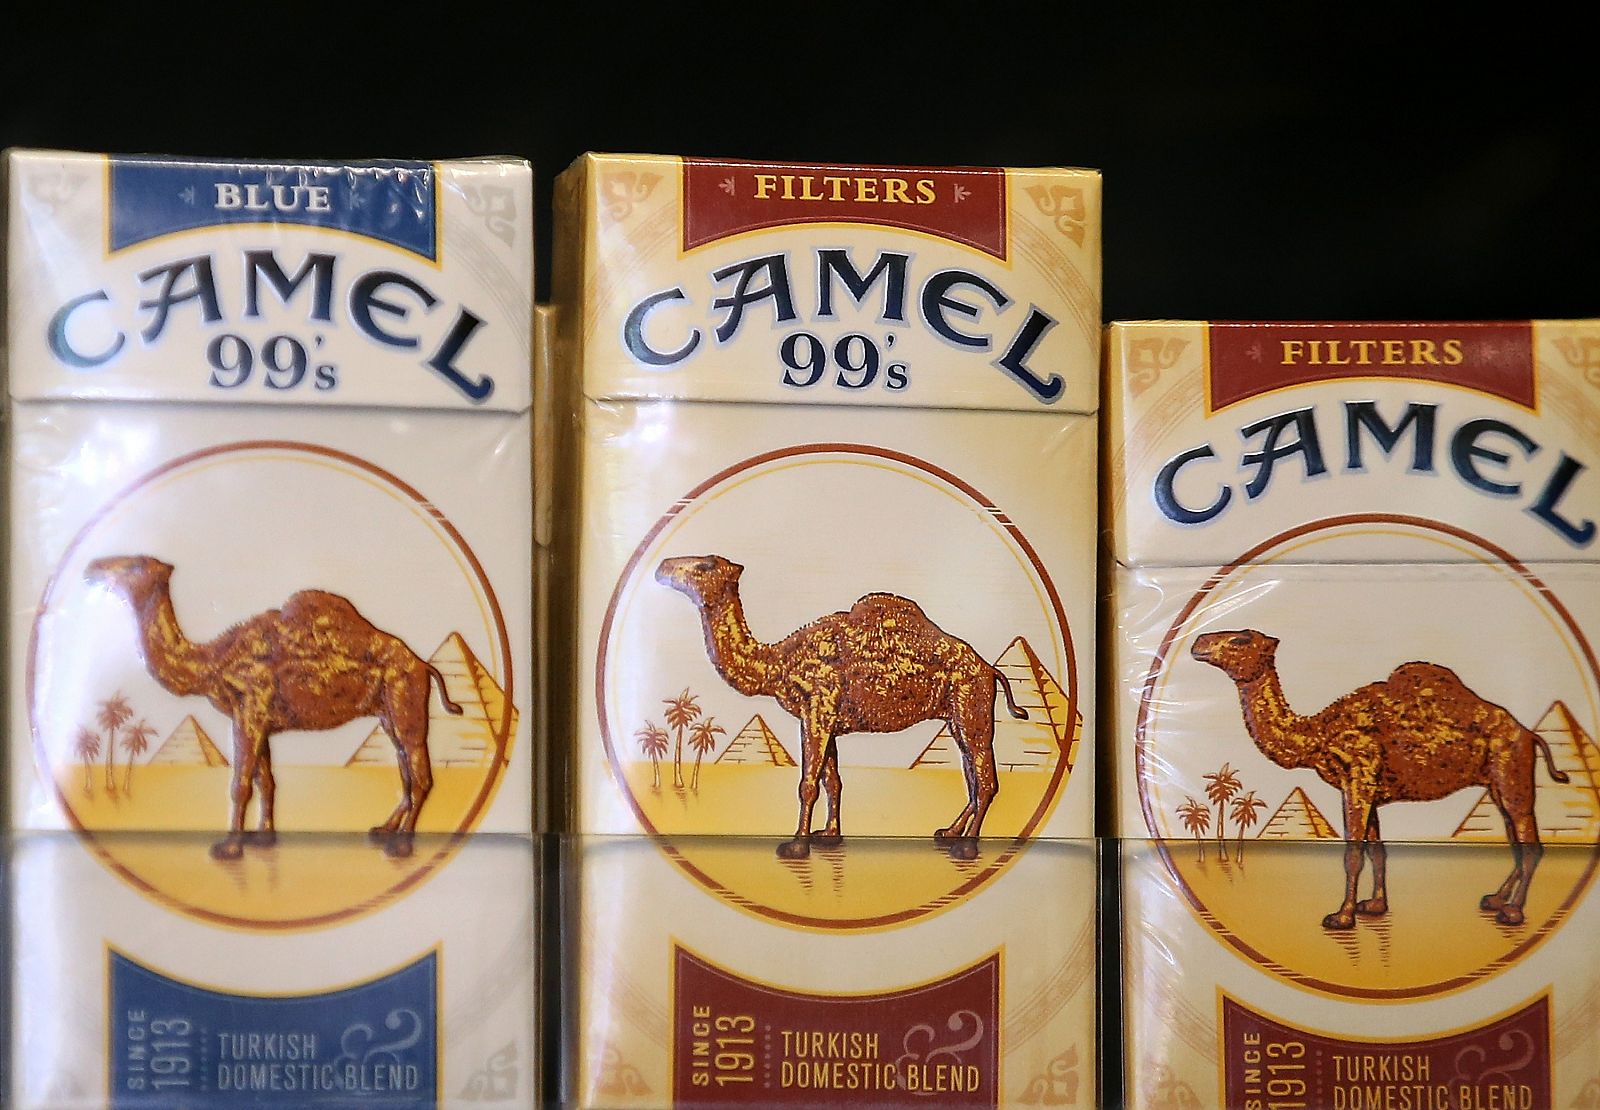 Cajetillas de Camel en una tienda de San Francisco